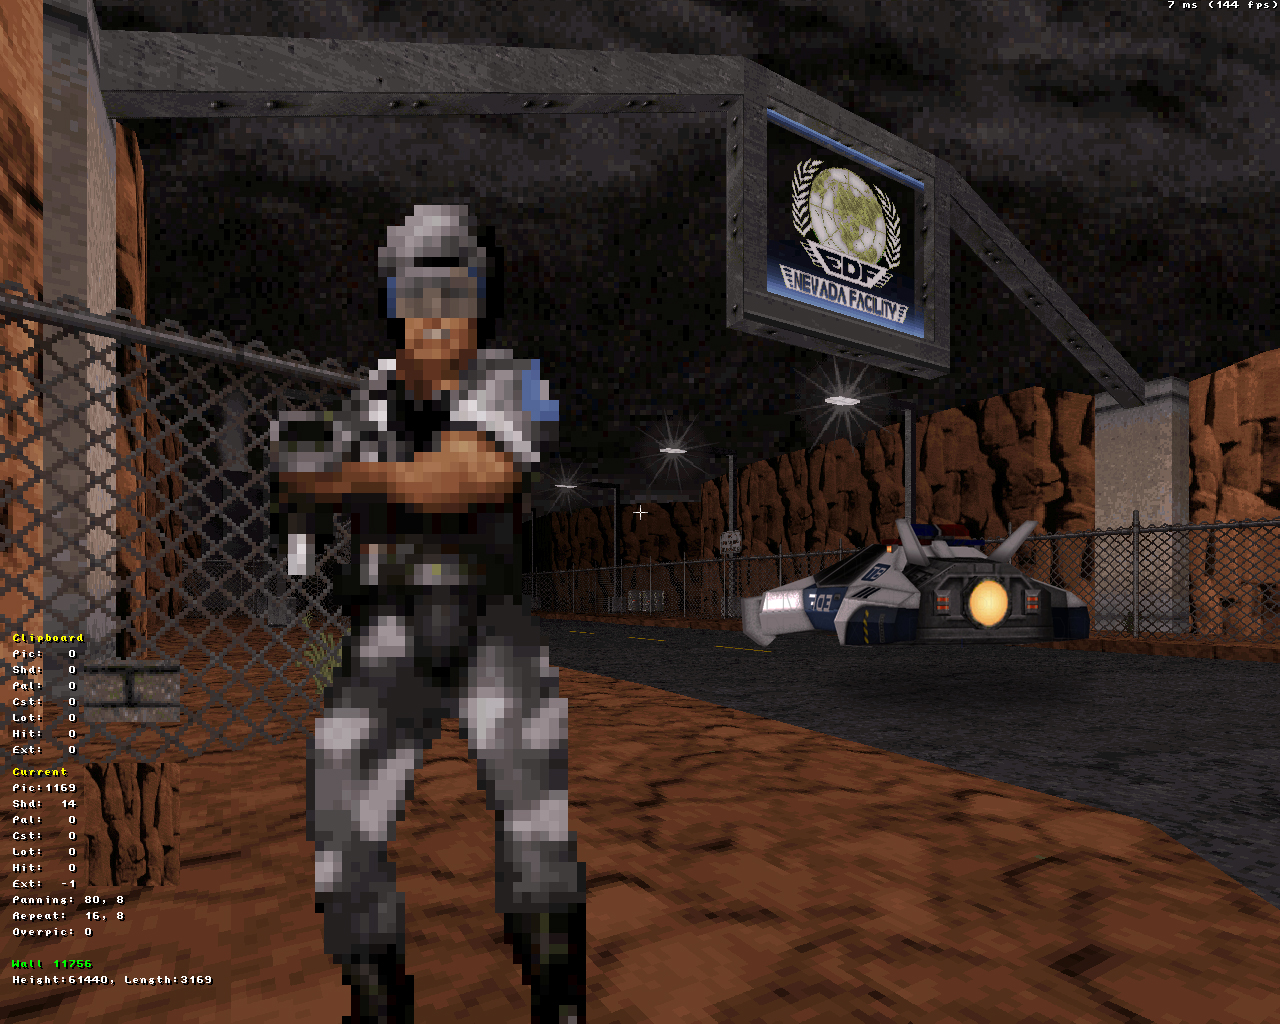 capt0013 image - Duke Nukem Forever 2013 mod for Duke Nukem 3D.